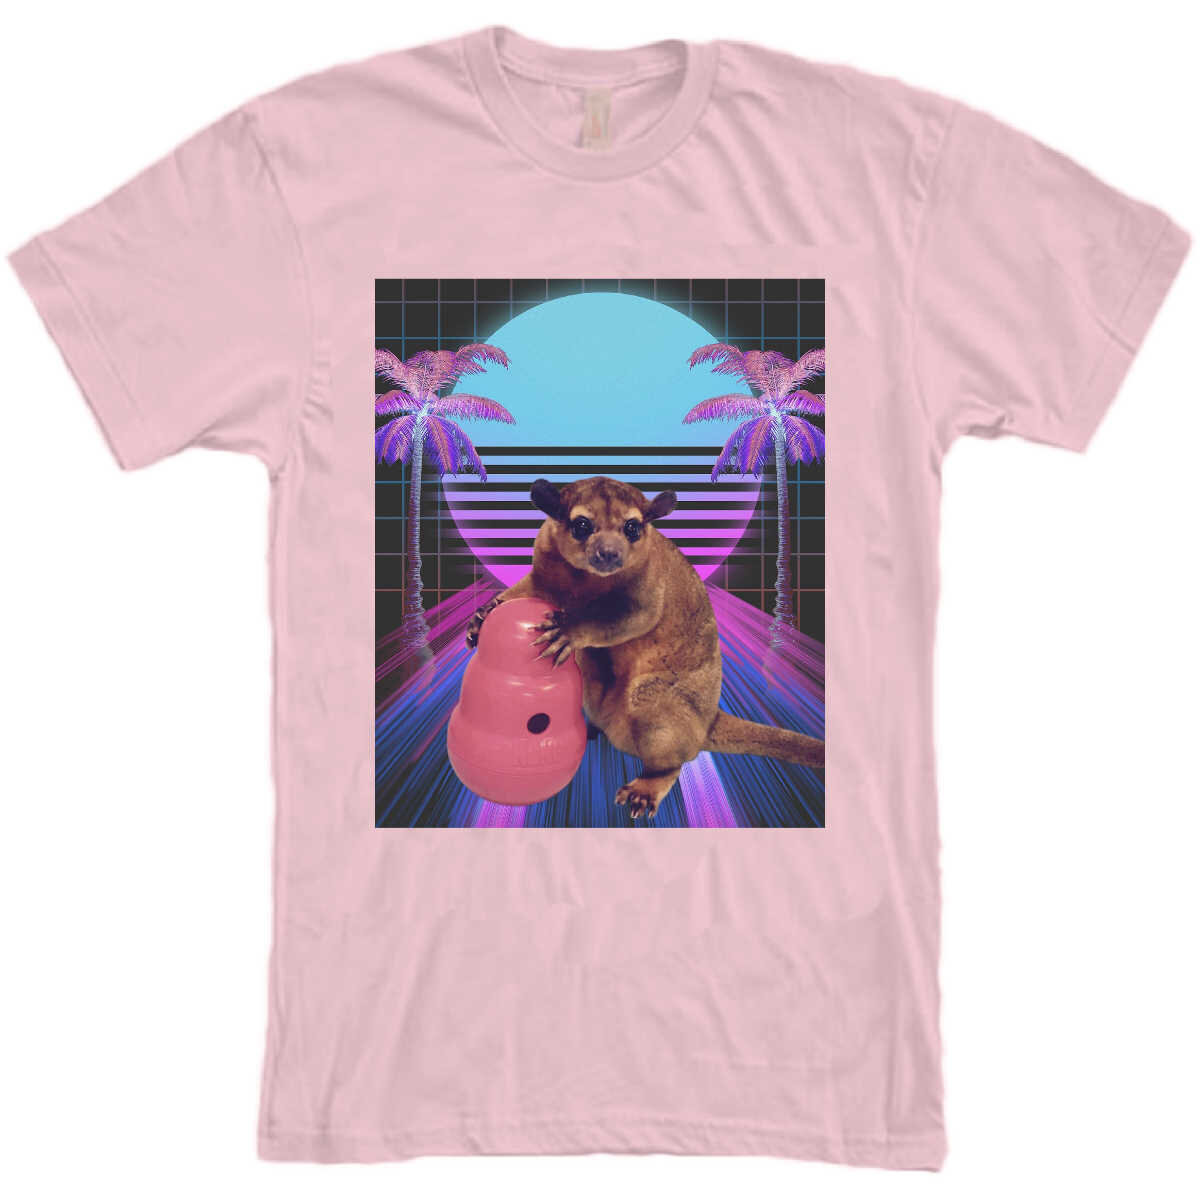 80s-esque TC Shirt - Pink